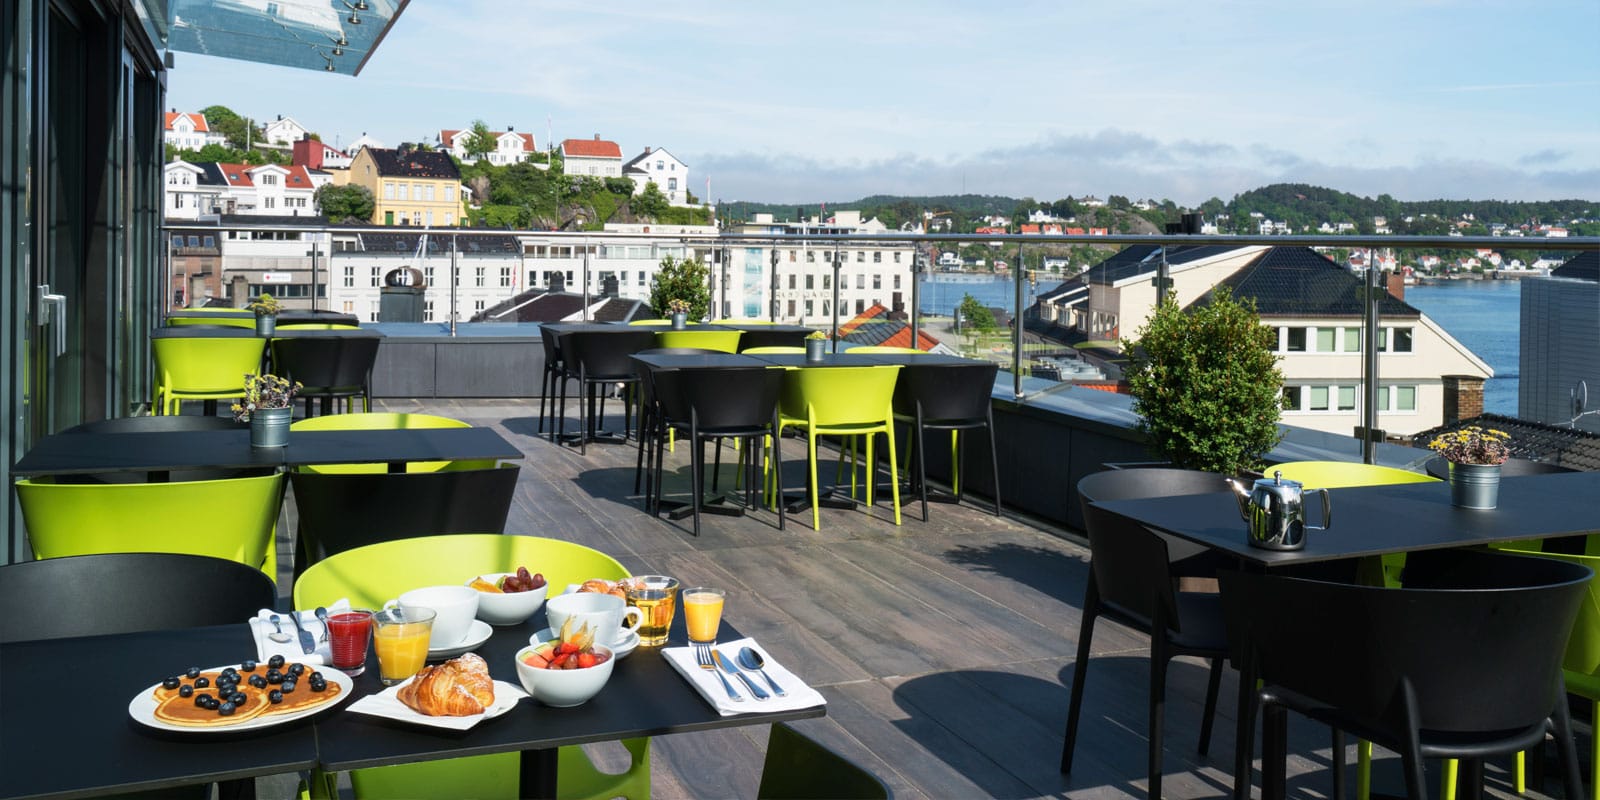 Frokost nytes på Thon Hotel Arendals takterasse med god utsikt ut mot hav og by